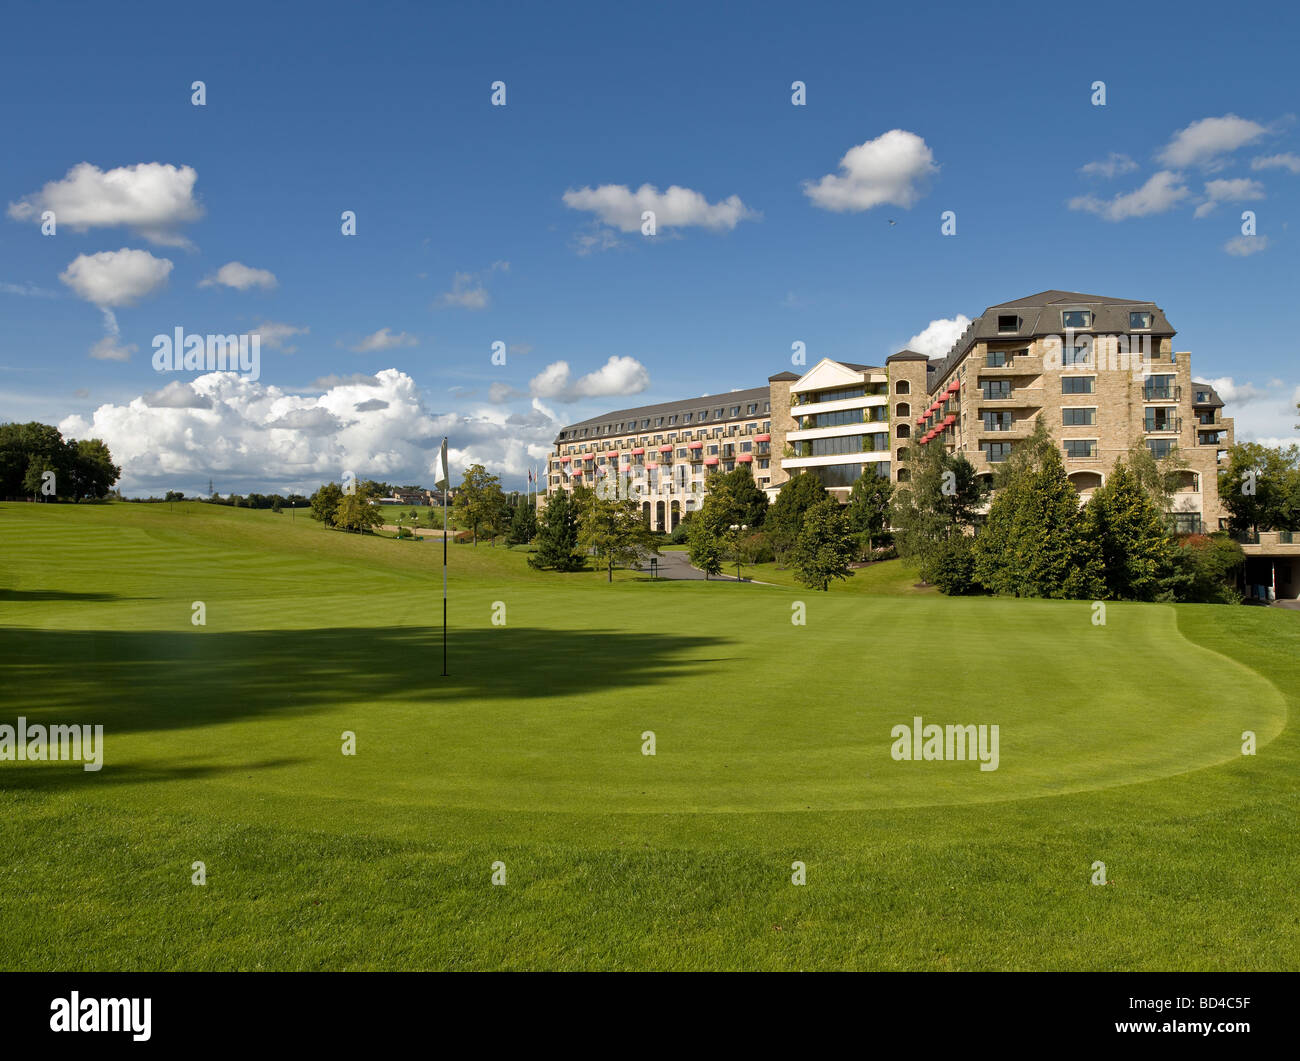 Celtic Manor Resort. Veranstaltungsort des Jahres 2010 Ryder-Cup-Golf-Turnier. Grün im Vordergrund Stockfoto